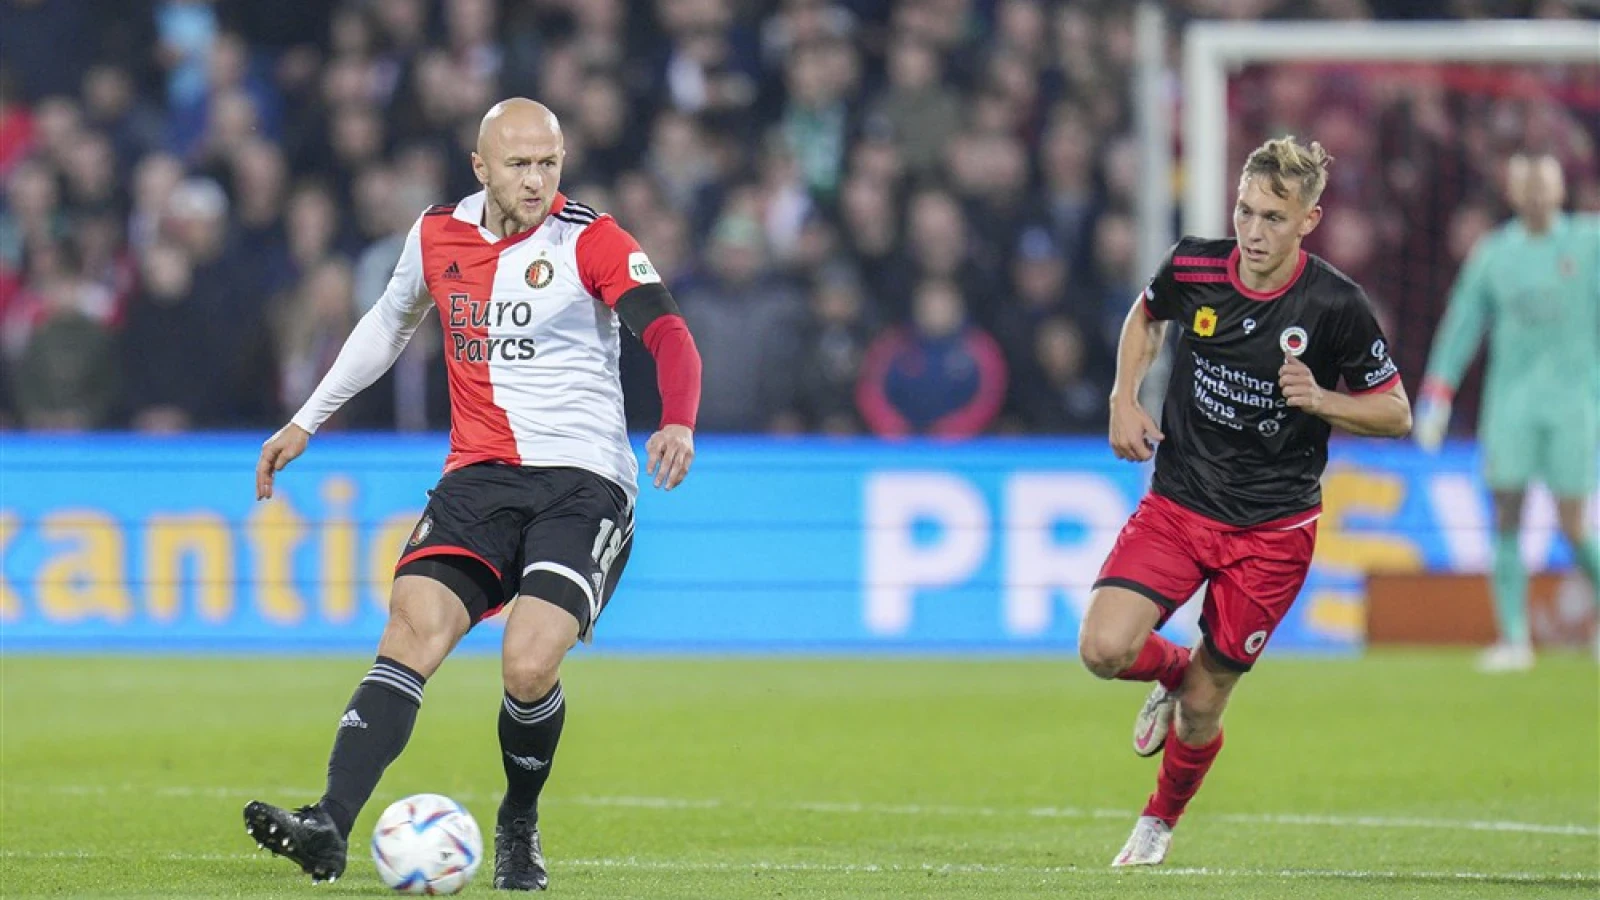 LIVE | Feyenoord - Excelsior 5-1 | Einde wedstrijd